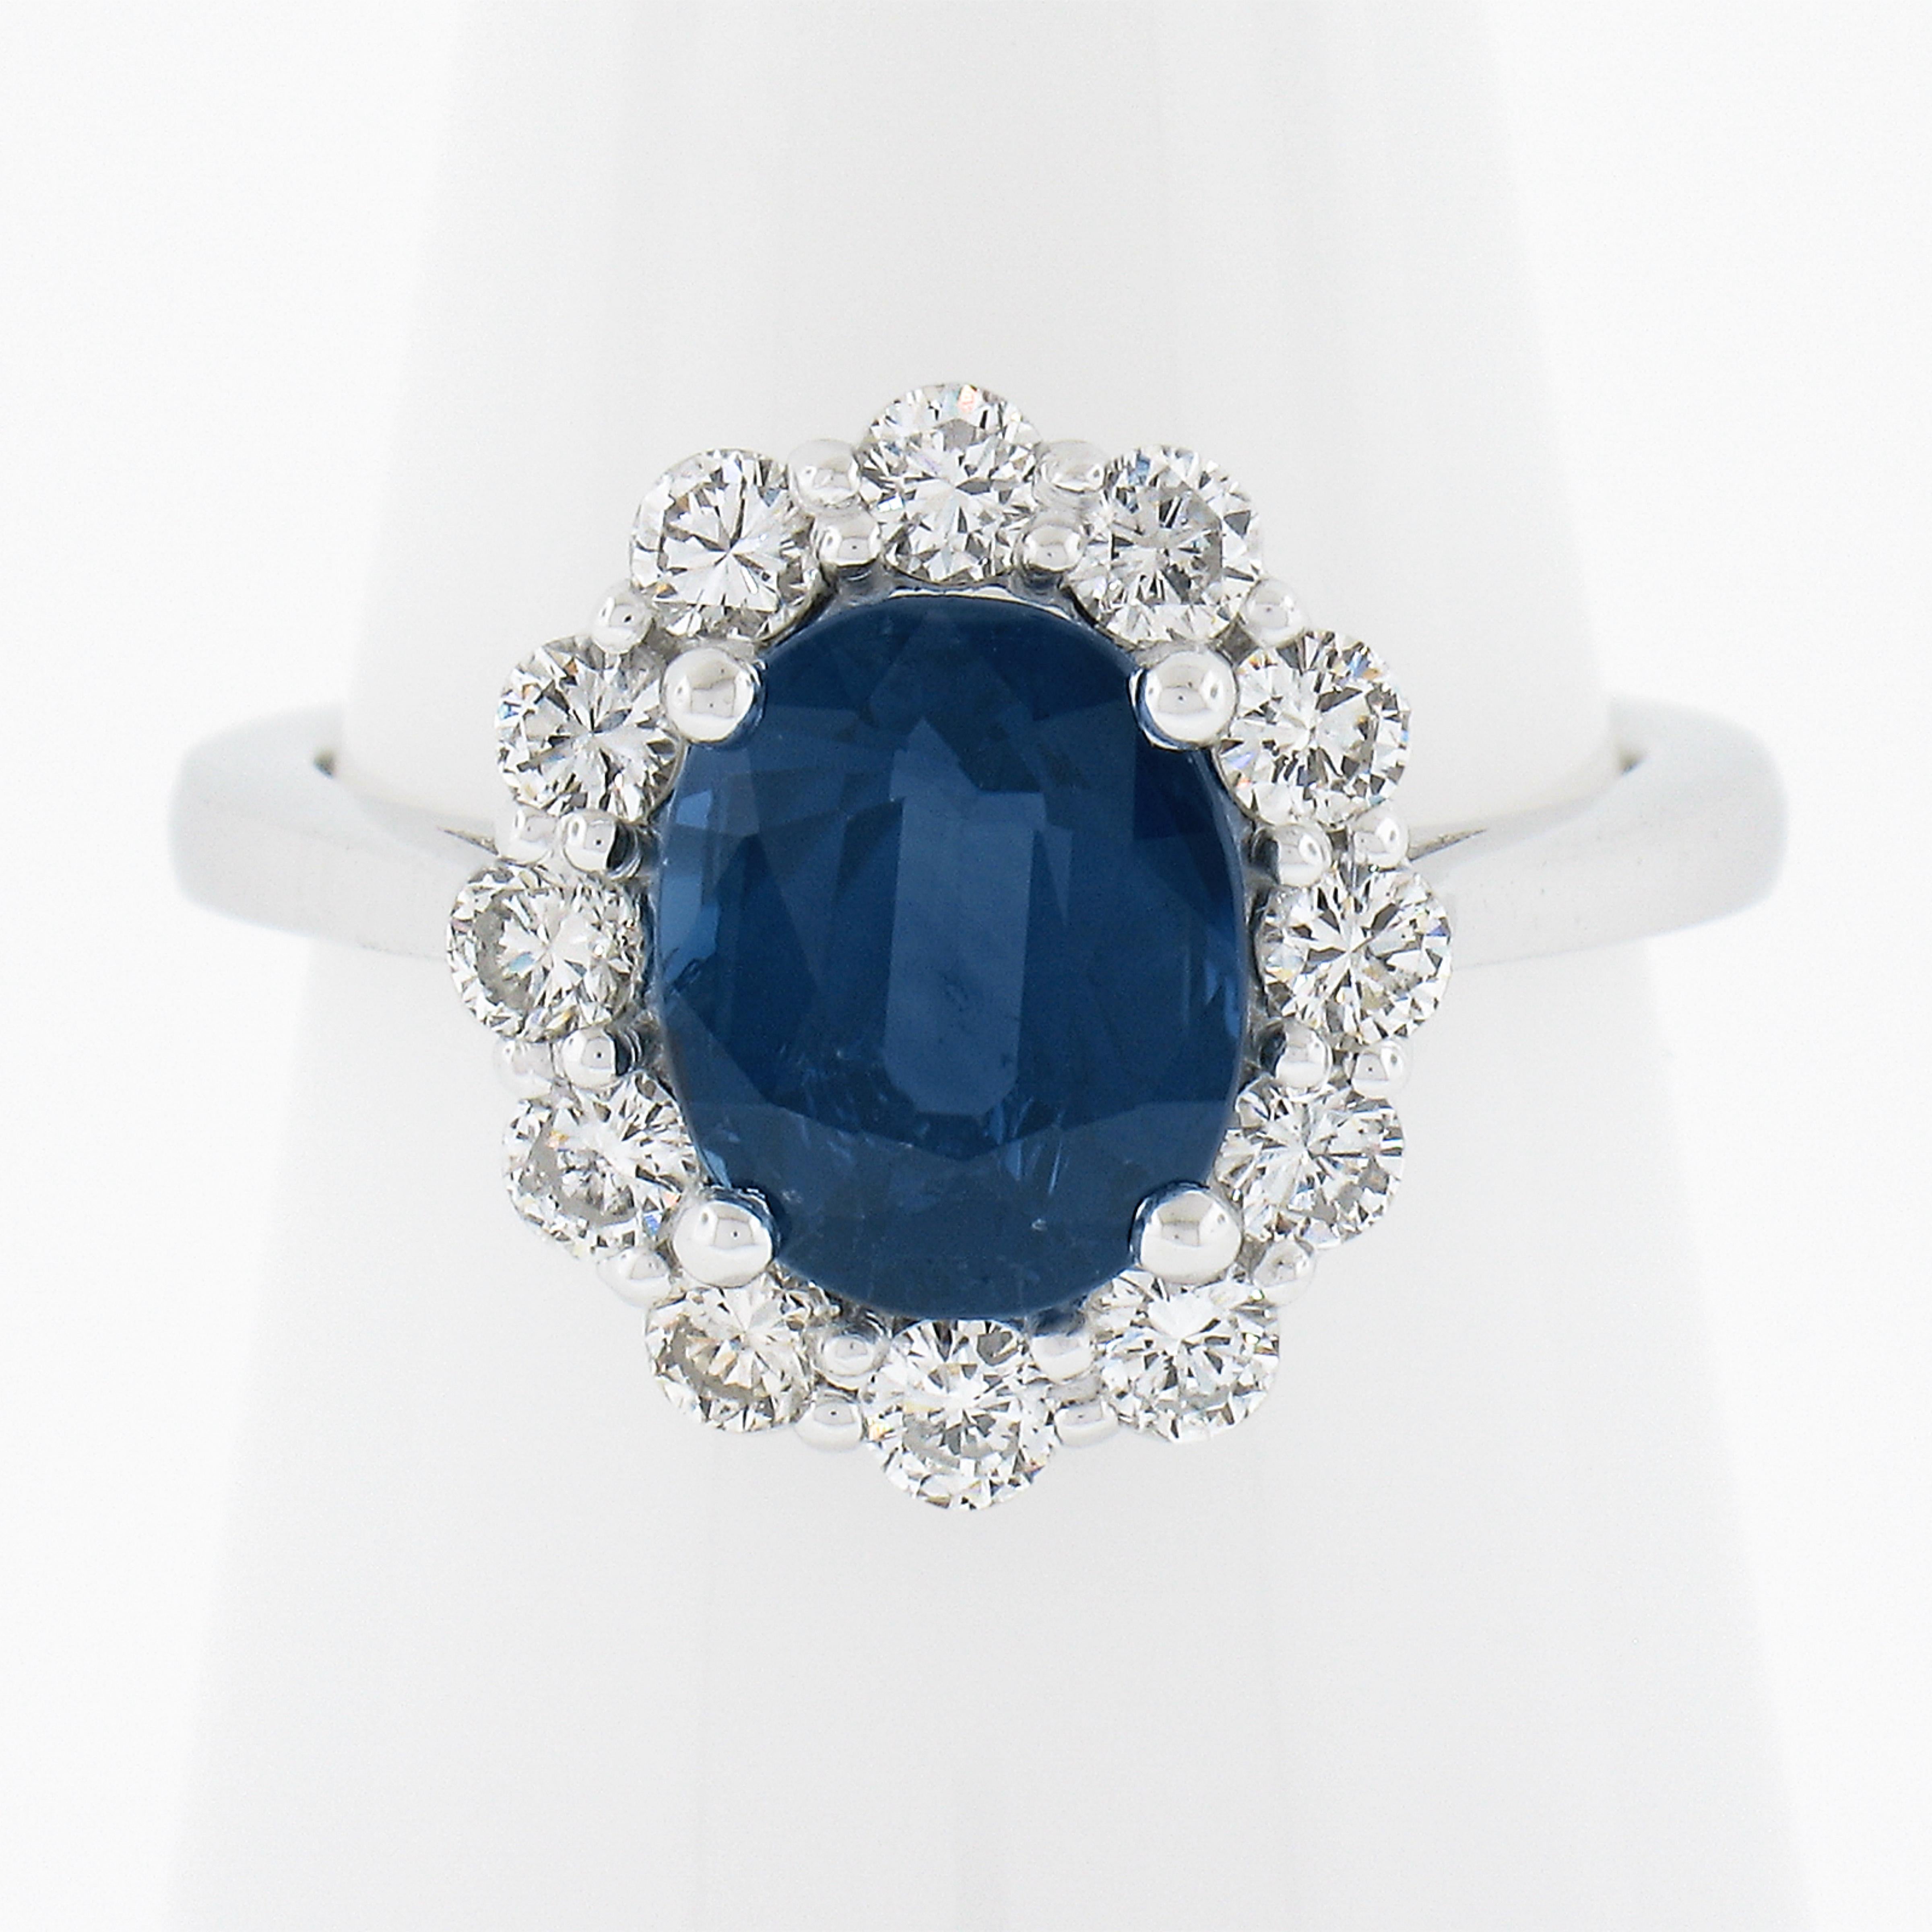 --Pierre(s) :...
(1) Saphir véritable naturel - taille ovale brillante - serti - riche couleur bleu royal - 2,59ct (exact - certifié)
** Voir les détails de la certification ci-dessous pour des informations complètes
(12) Diamants naturels